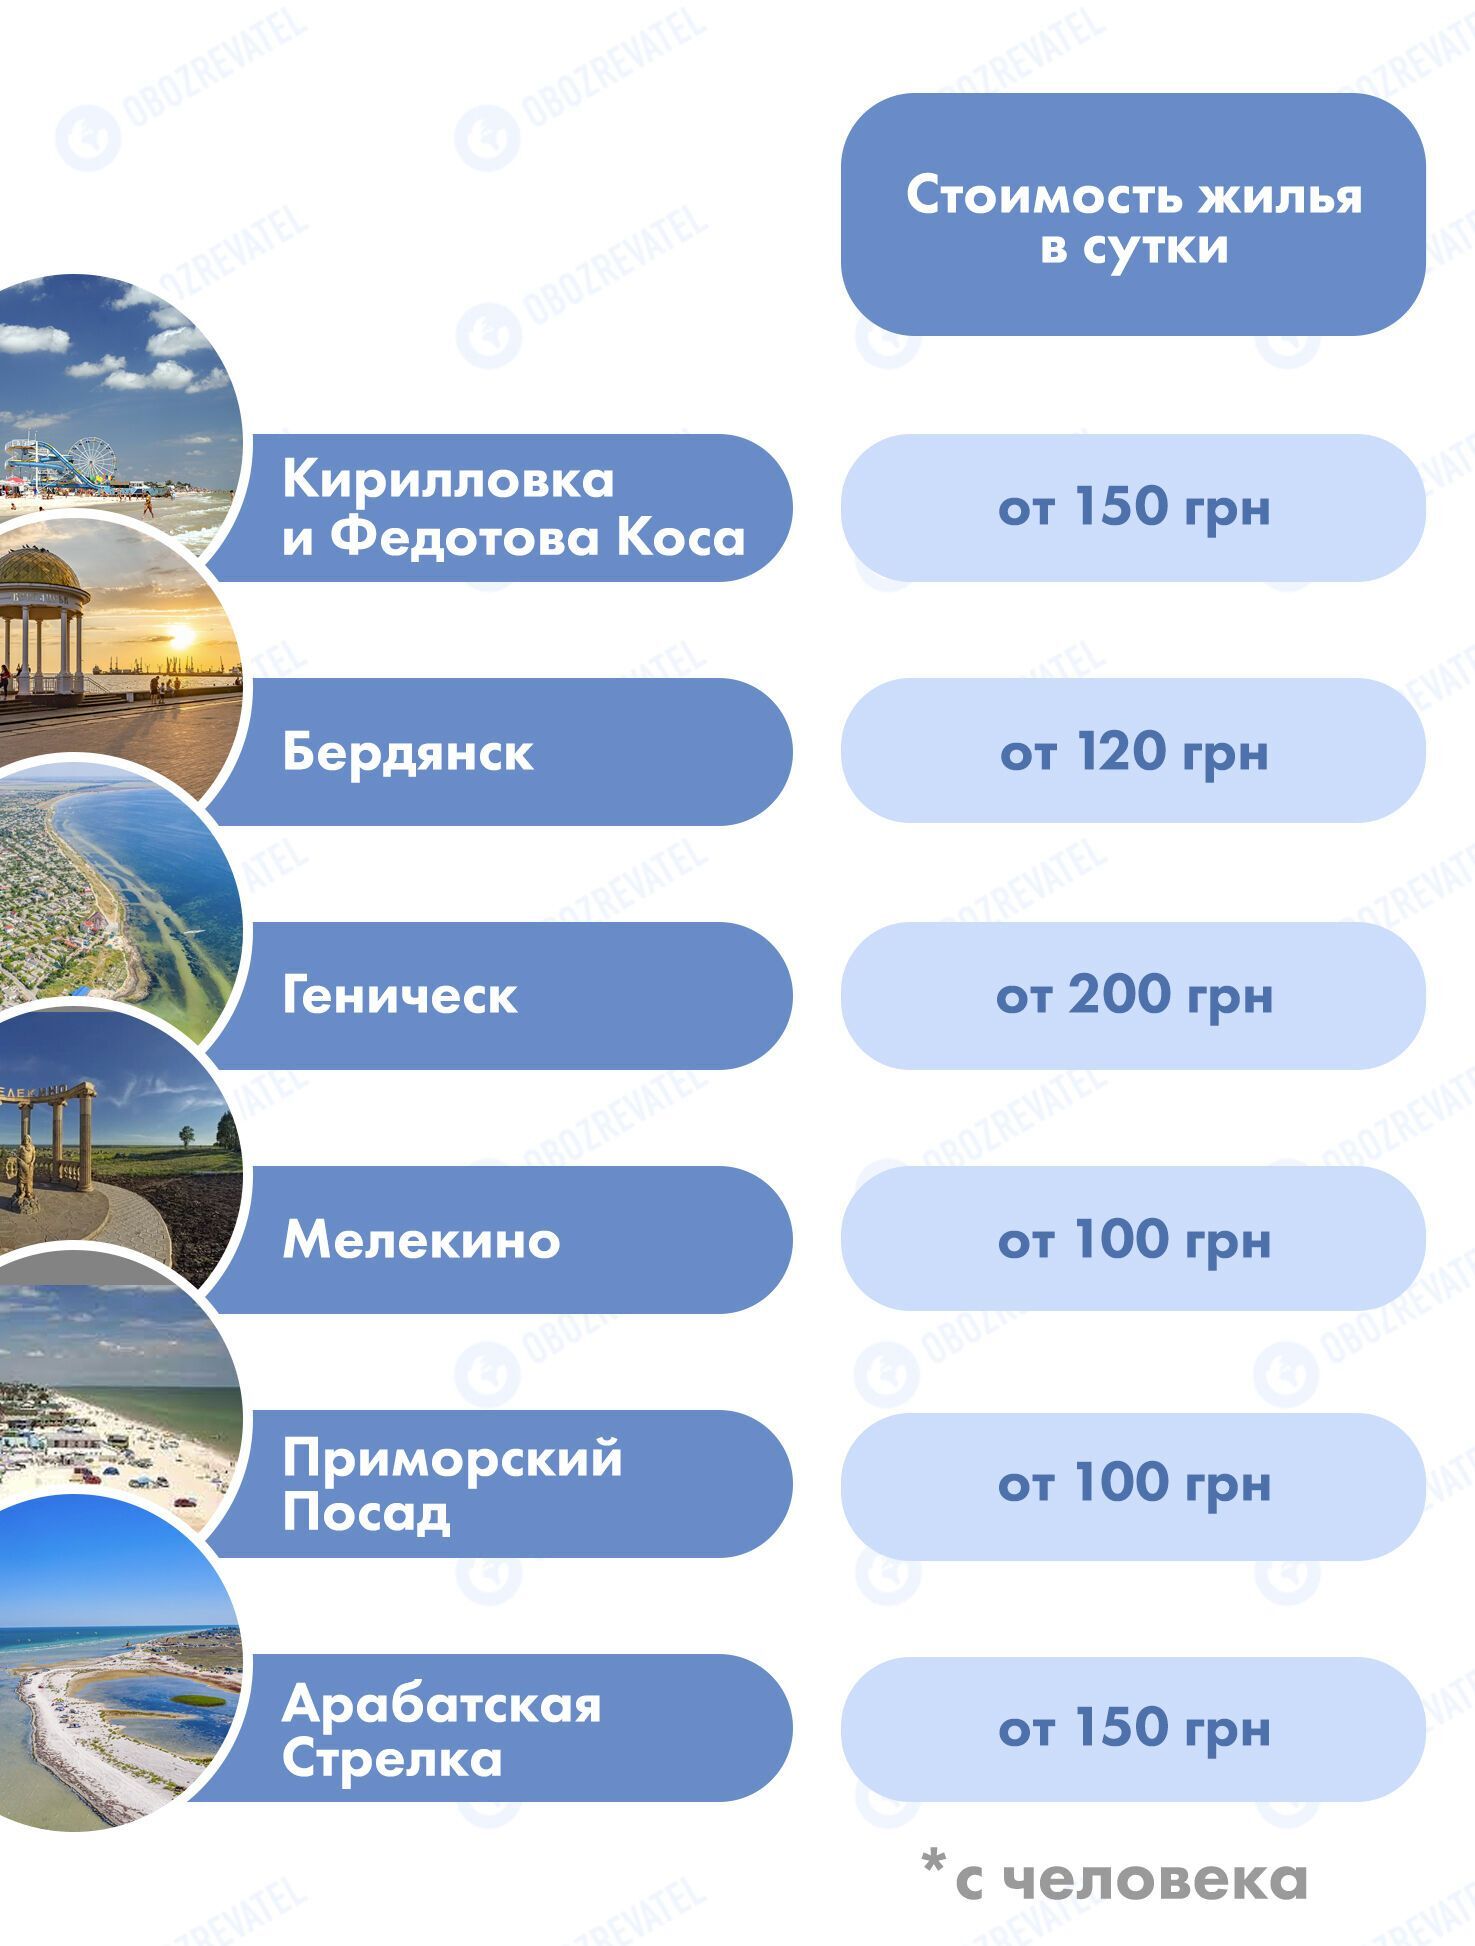 Відпочинок на курортах Азовського моря: де найкращі пляжі і які ціни на житло. Інфографіка